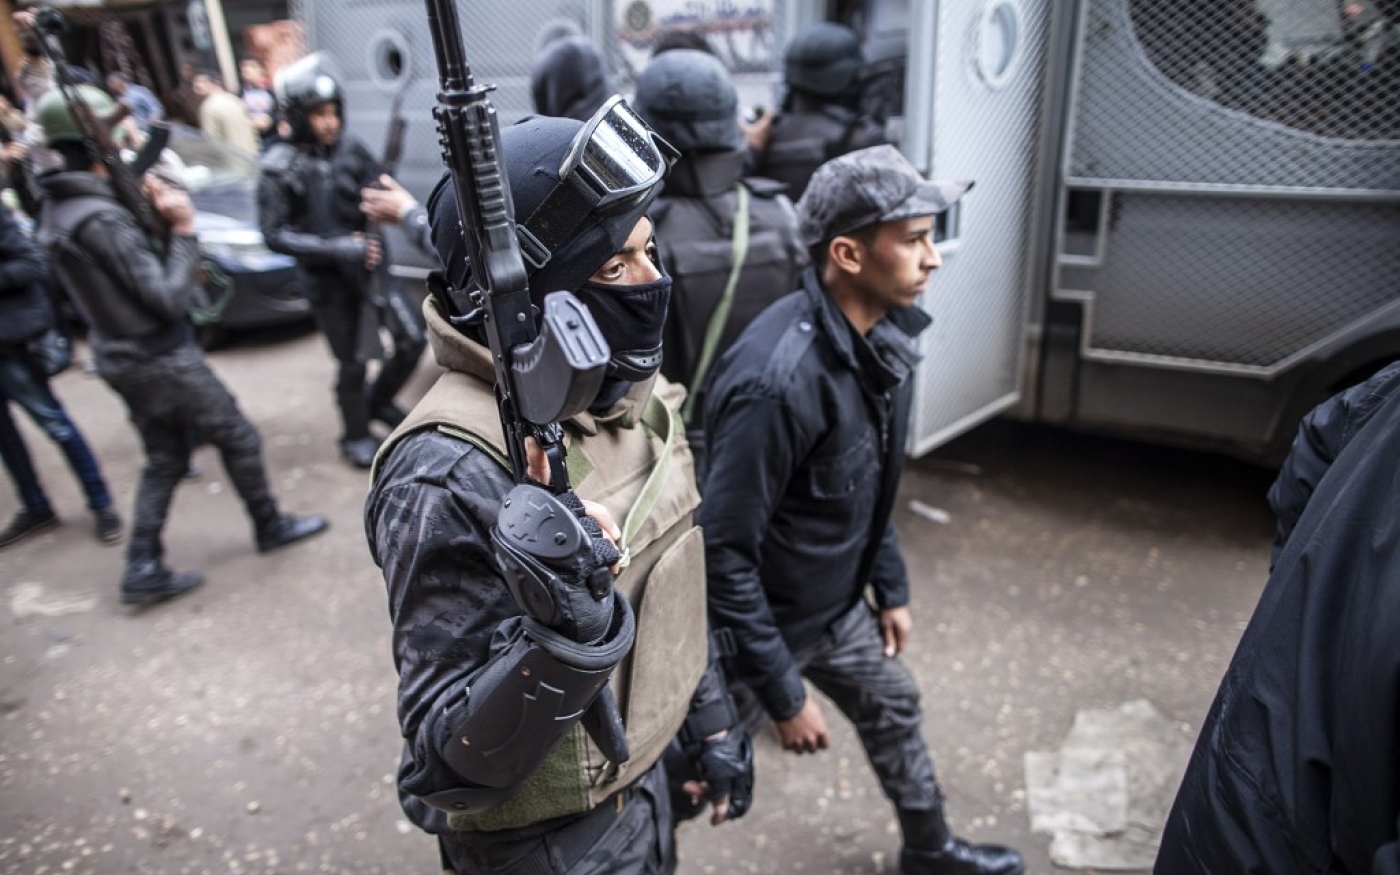 Les forces spéciales égyptiennes patrouillent dans les rues au sud du Caire en 2016 pour parer toute manifestation potentielle contre le gouvernement de Sissi (AFP)